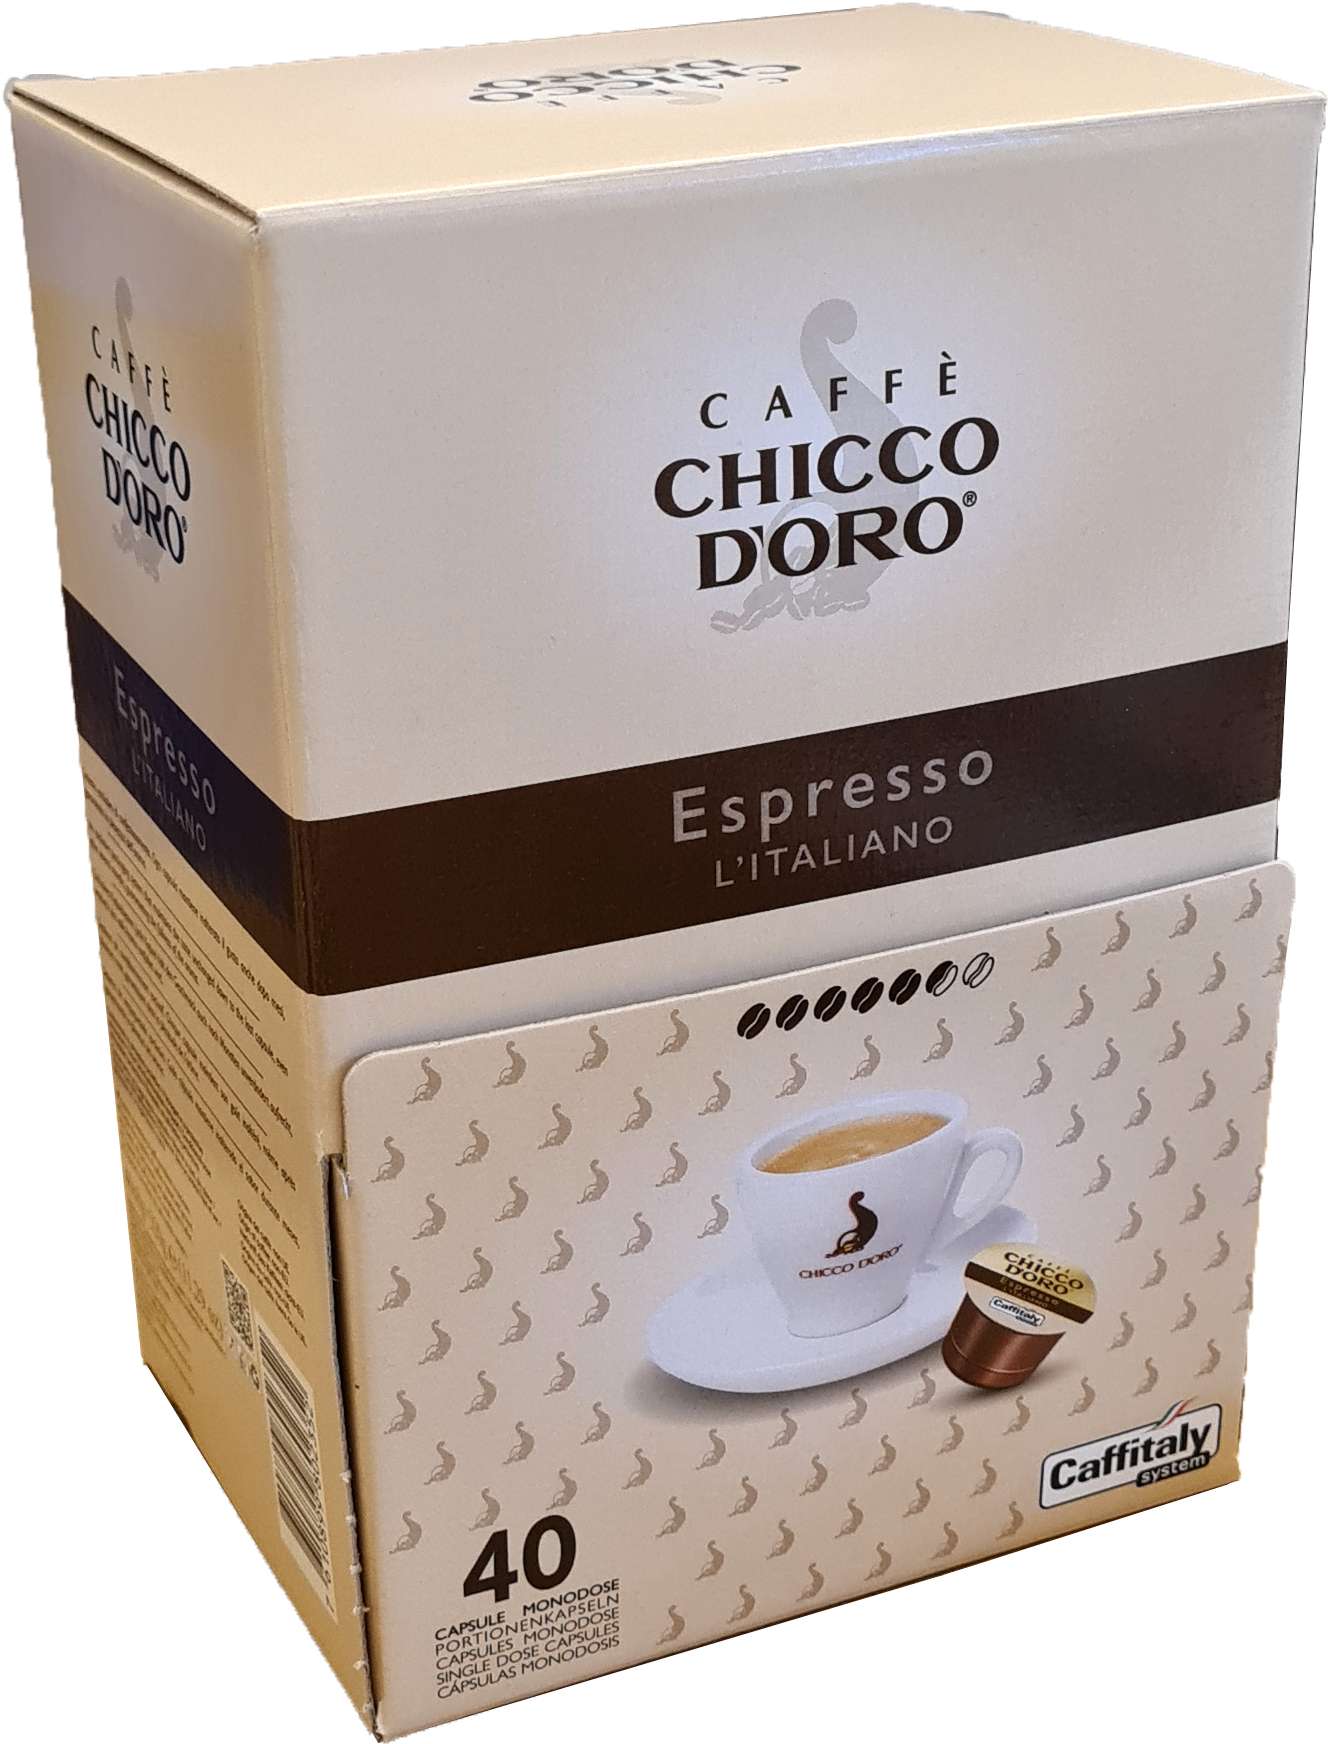 CHICCO D'ORO Café Caffitaly 802352 Espresso Italiano 40 pcs.